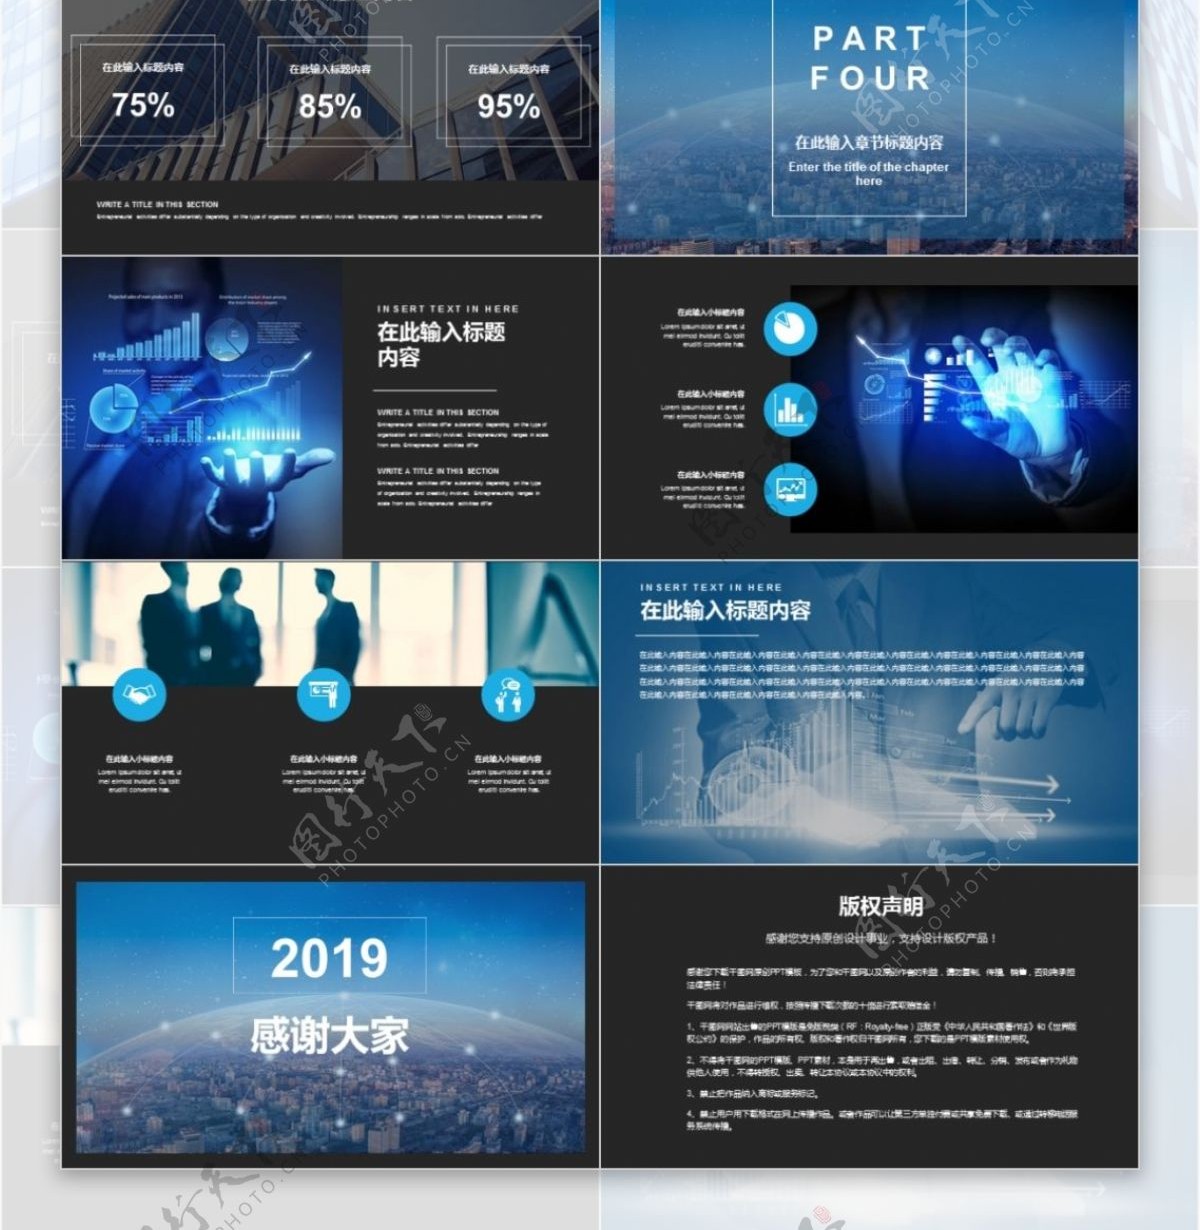 2019蓝色互联网行业年度述职汇报通用PPT模板